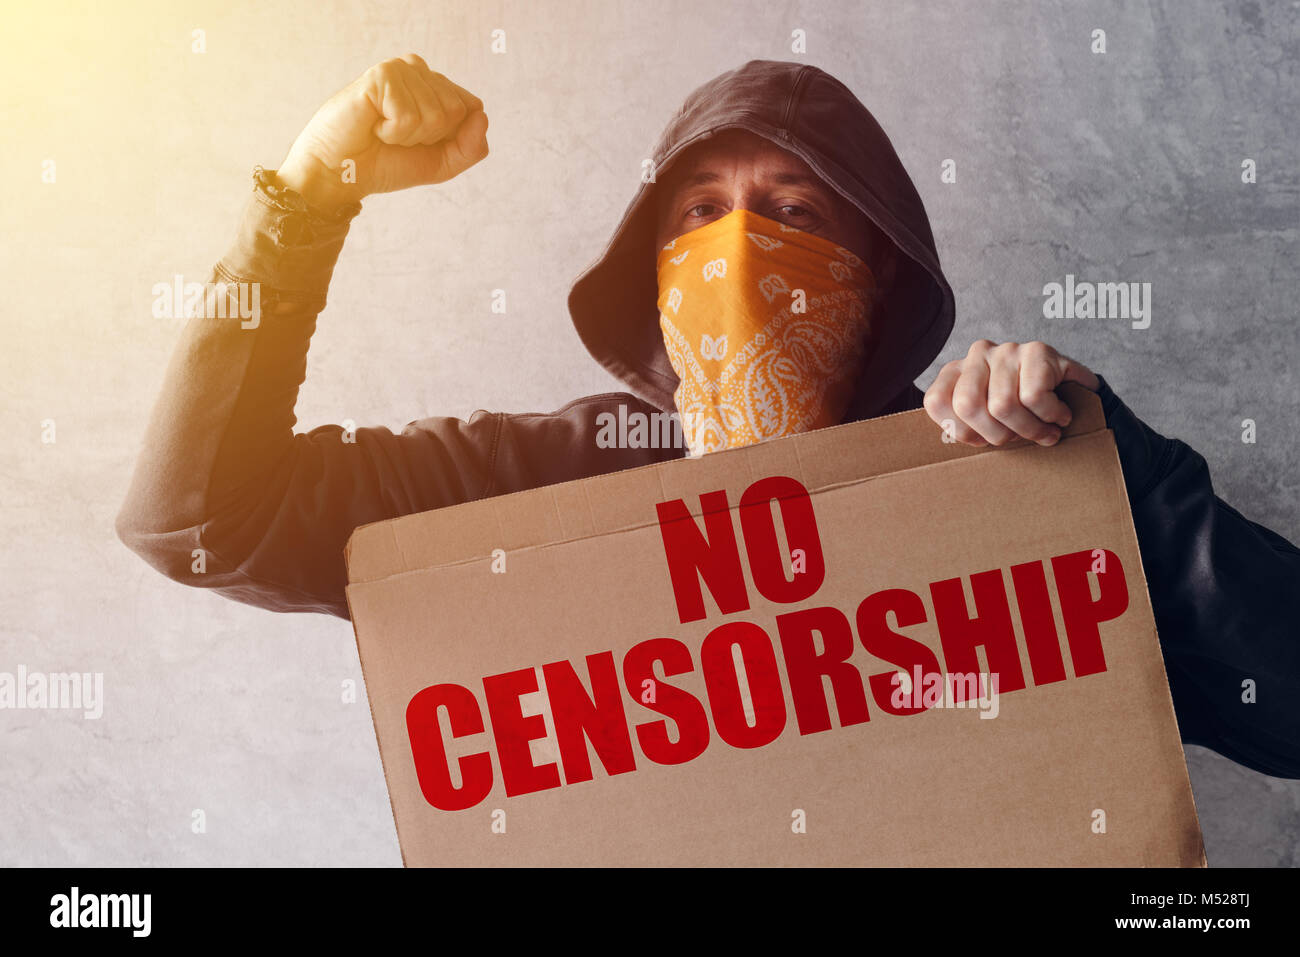 Activista encapuchado manifestante celebrar ningún signo de protesta contra la censura. Hombre con hoodie y pañuelo sobre el rostro tomando parte en el activismo y luchando por la causa. Foto de stock